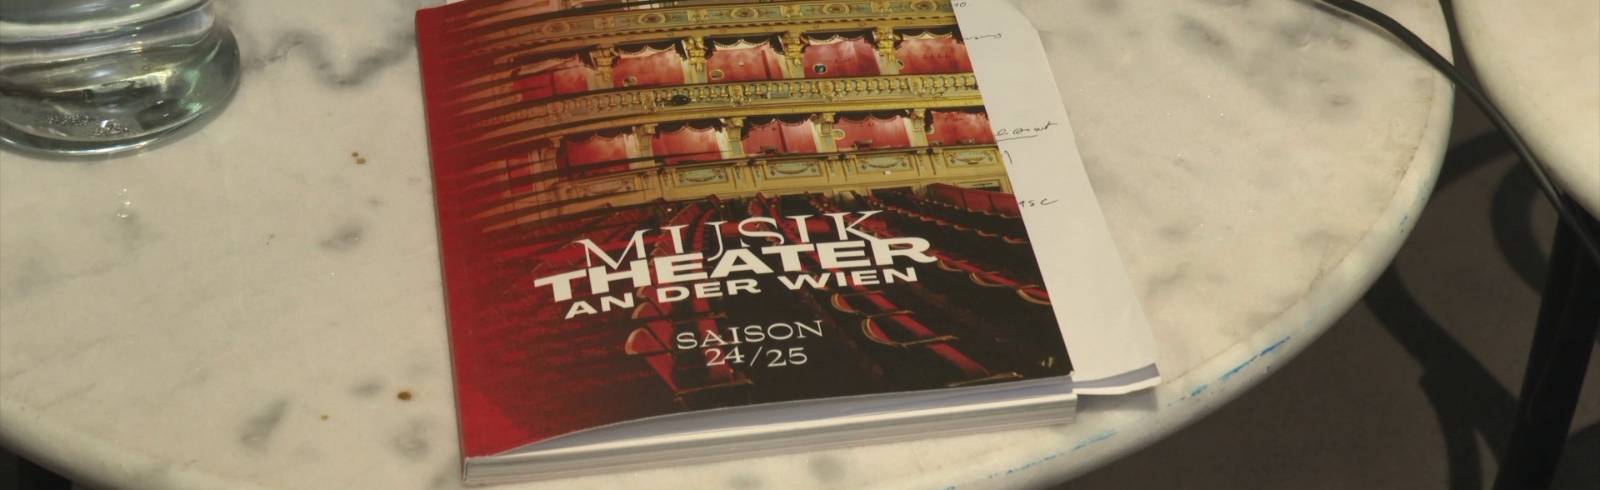 MusikTheater: Mit Wien-Fokus zurück an der Wien